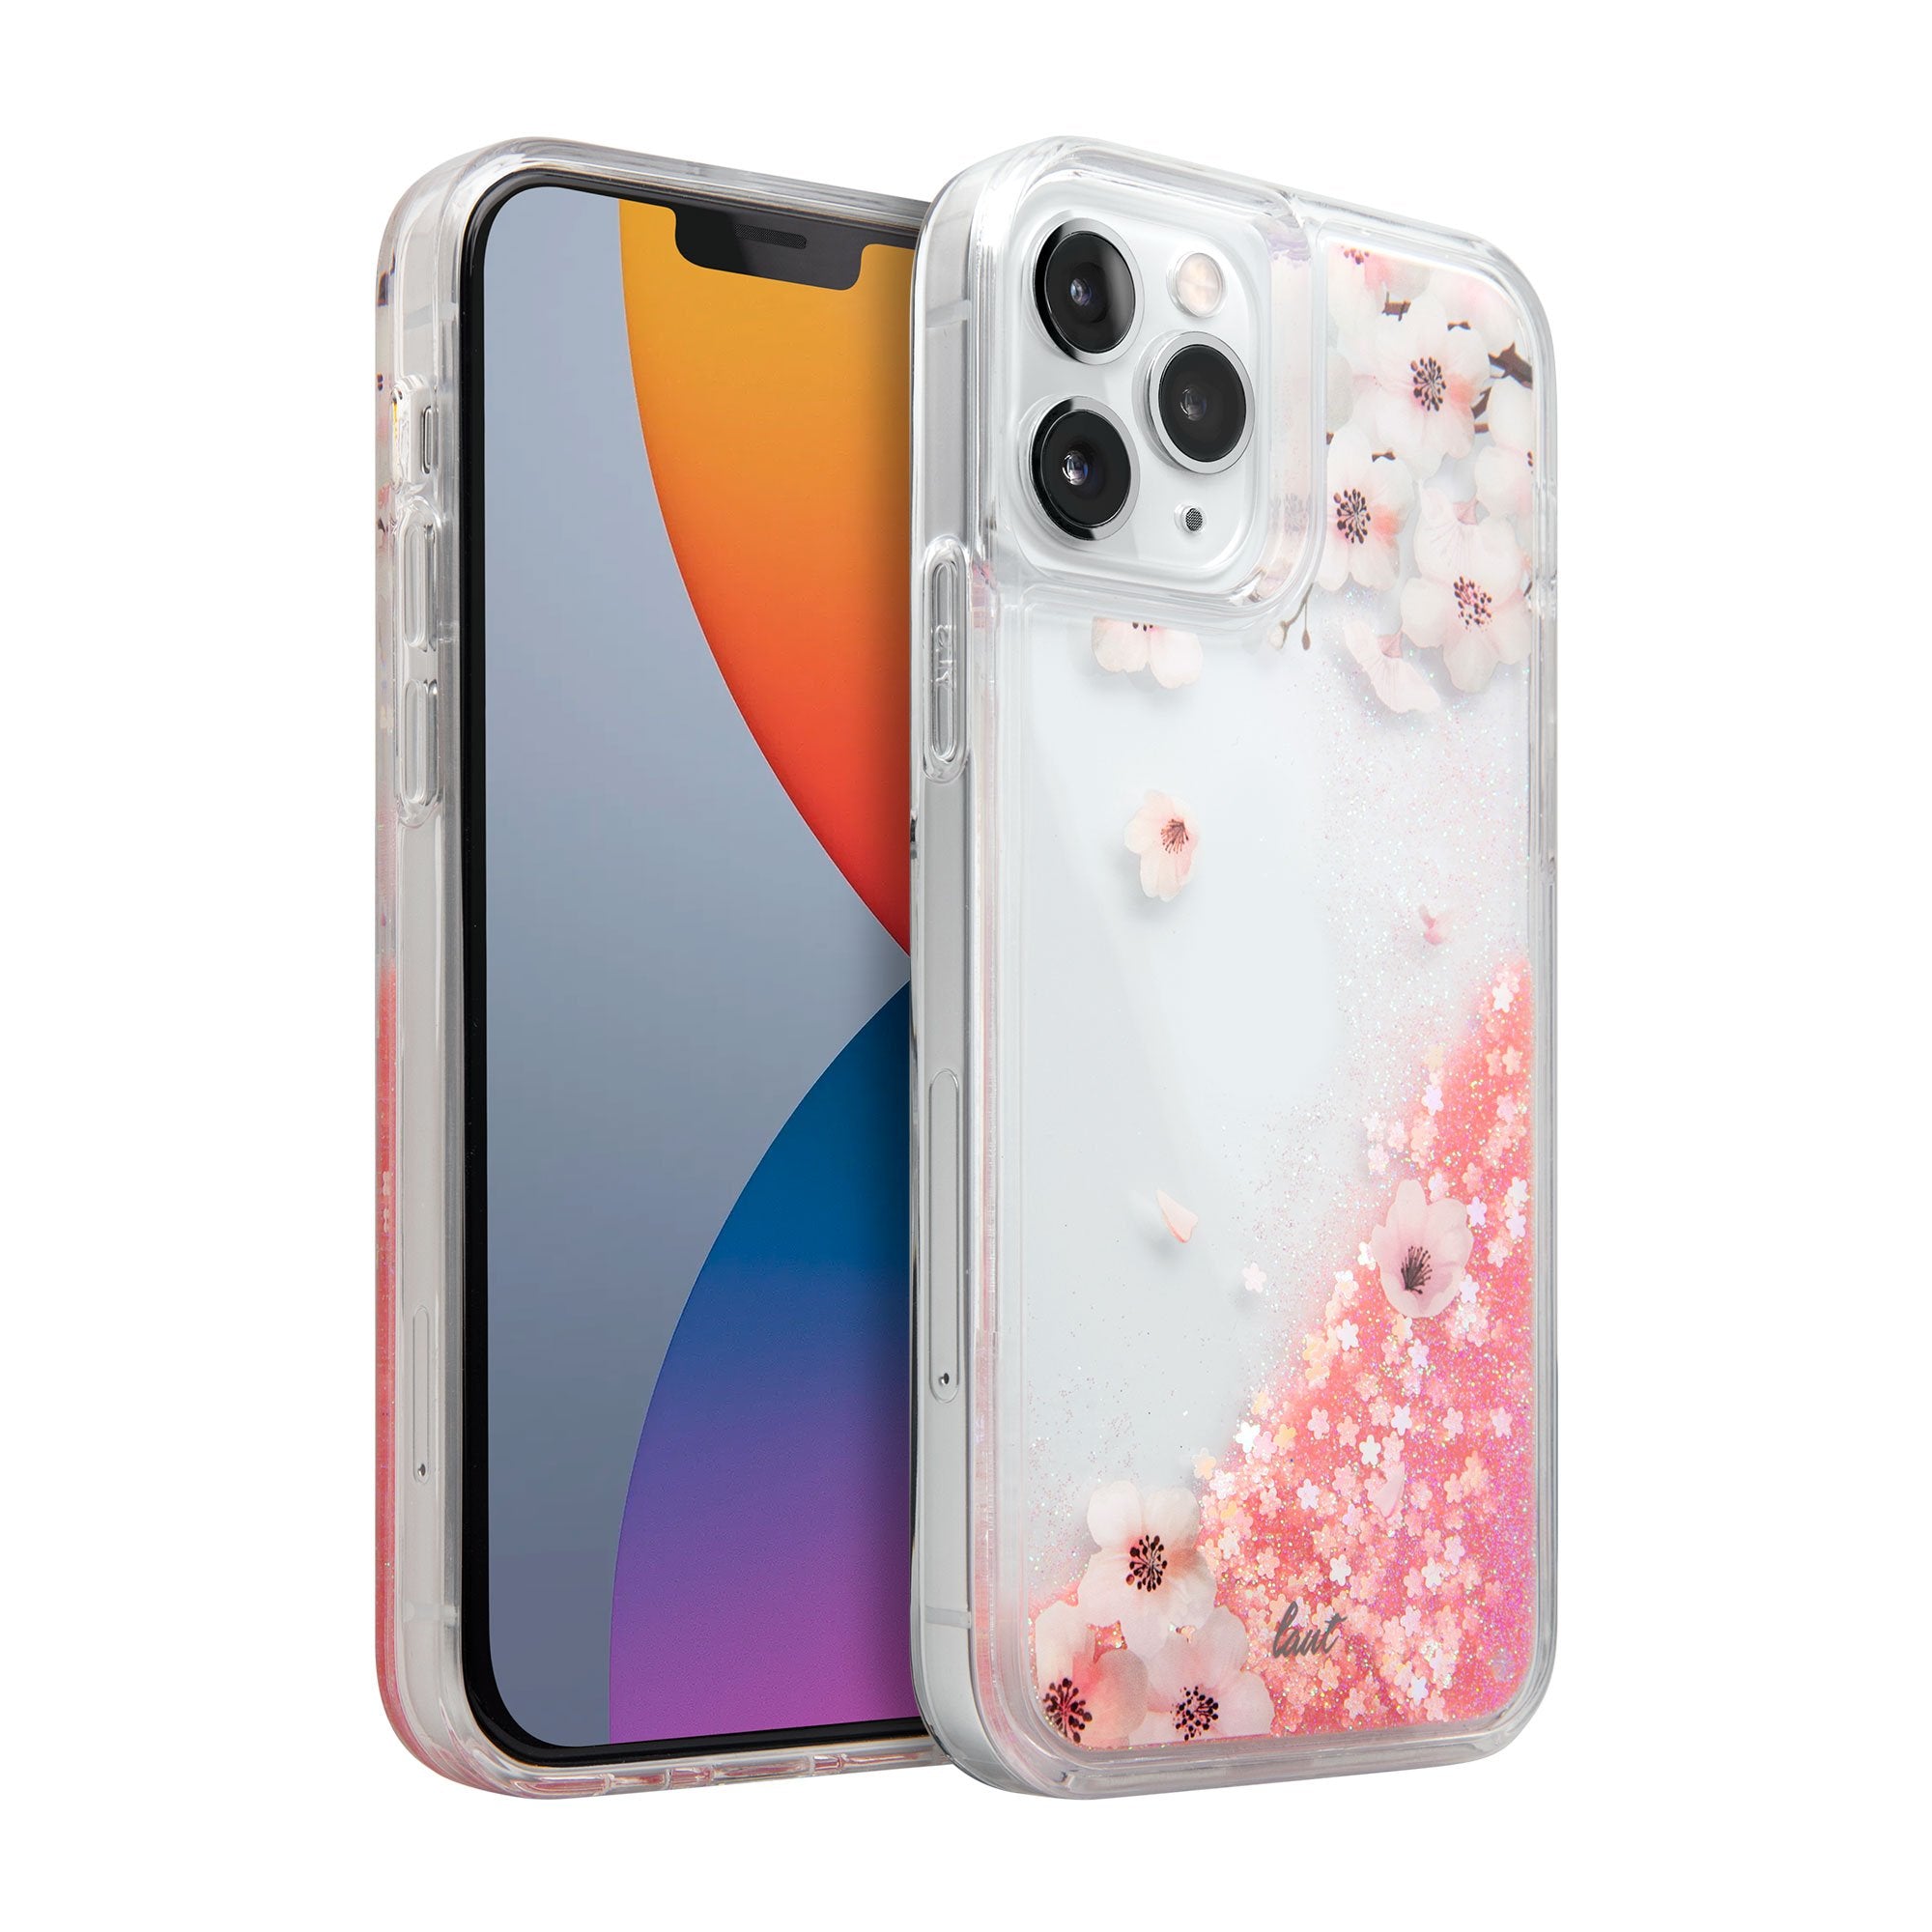 SAKURA Liquid Glitter case for iPhone 12 series